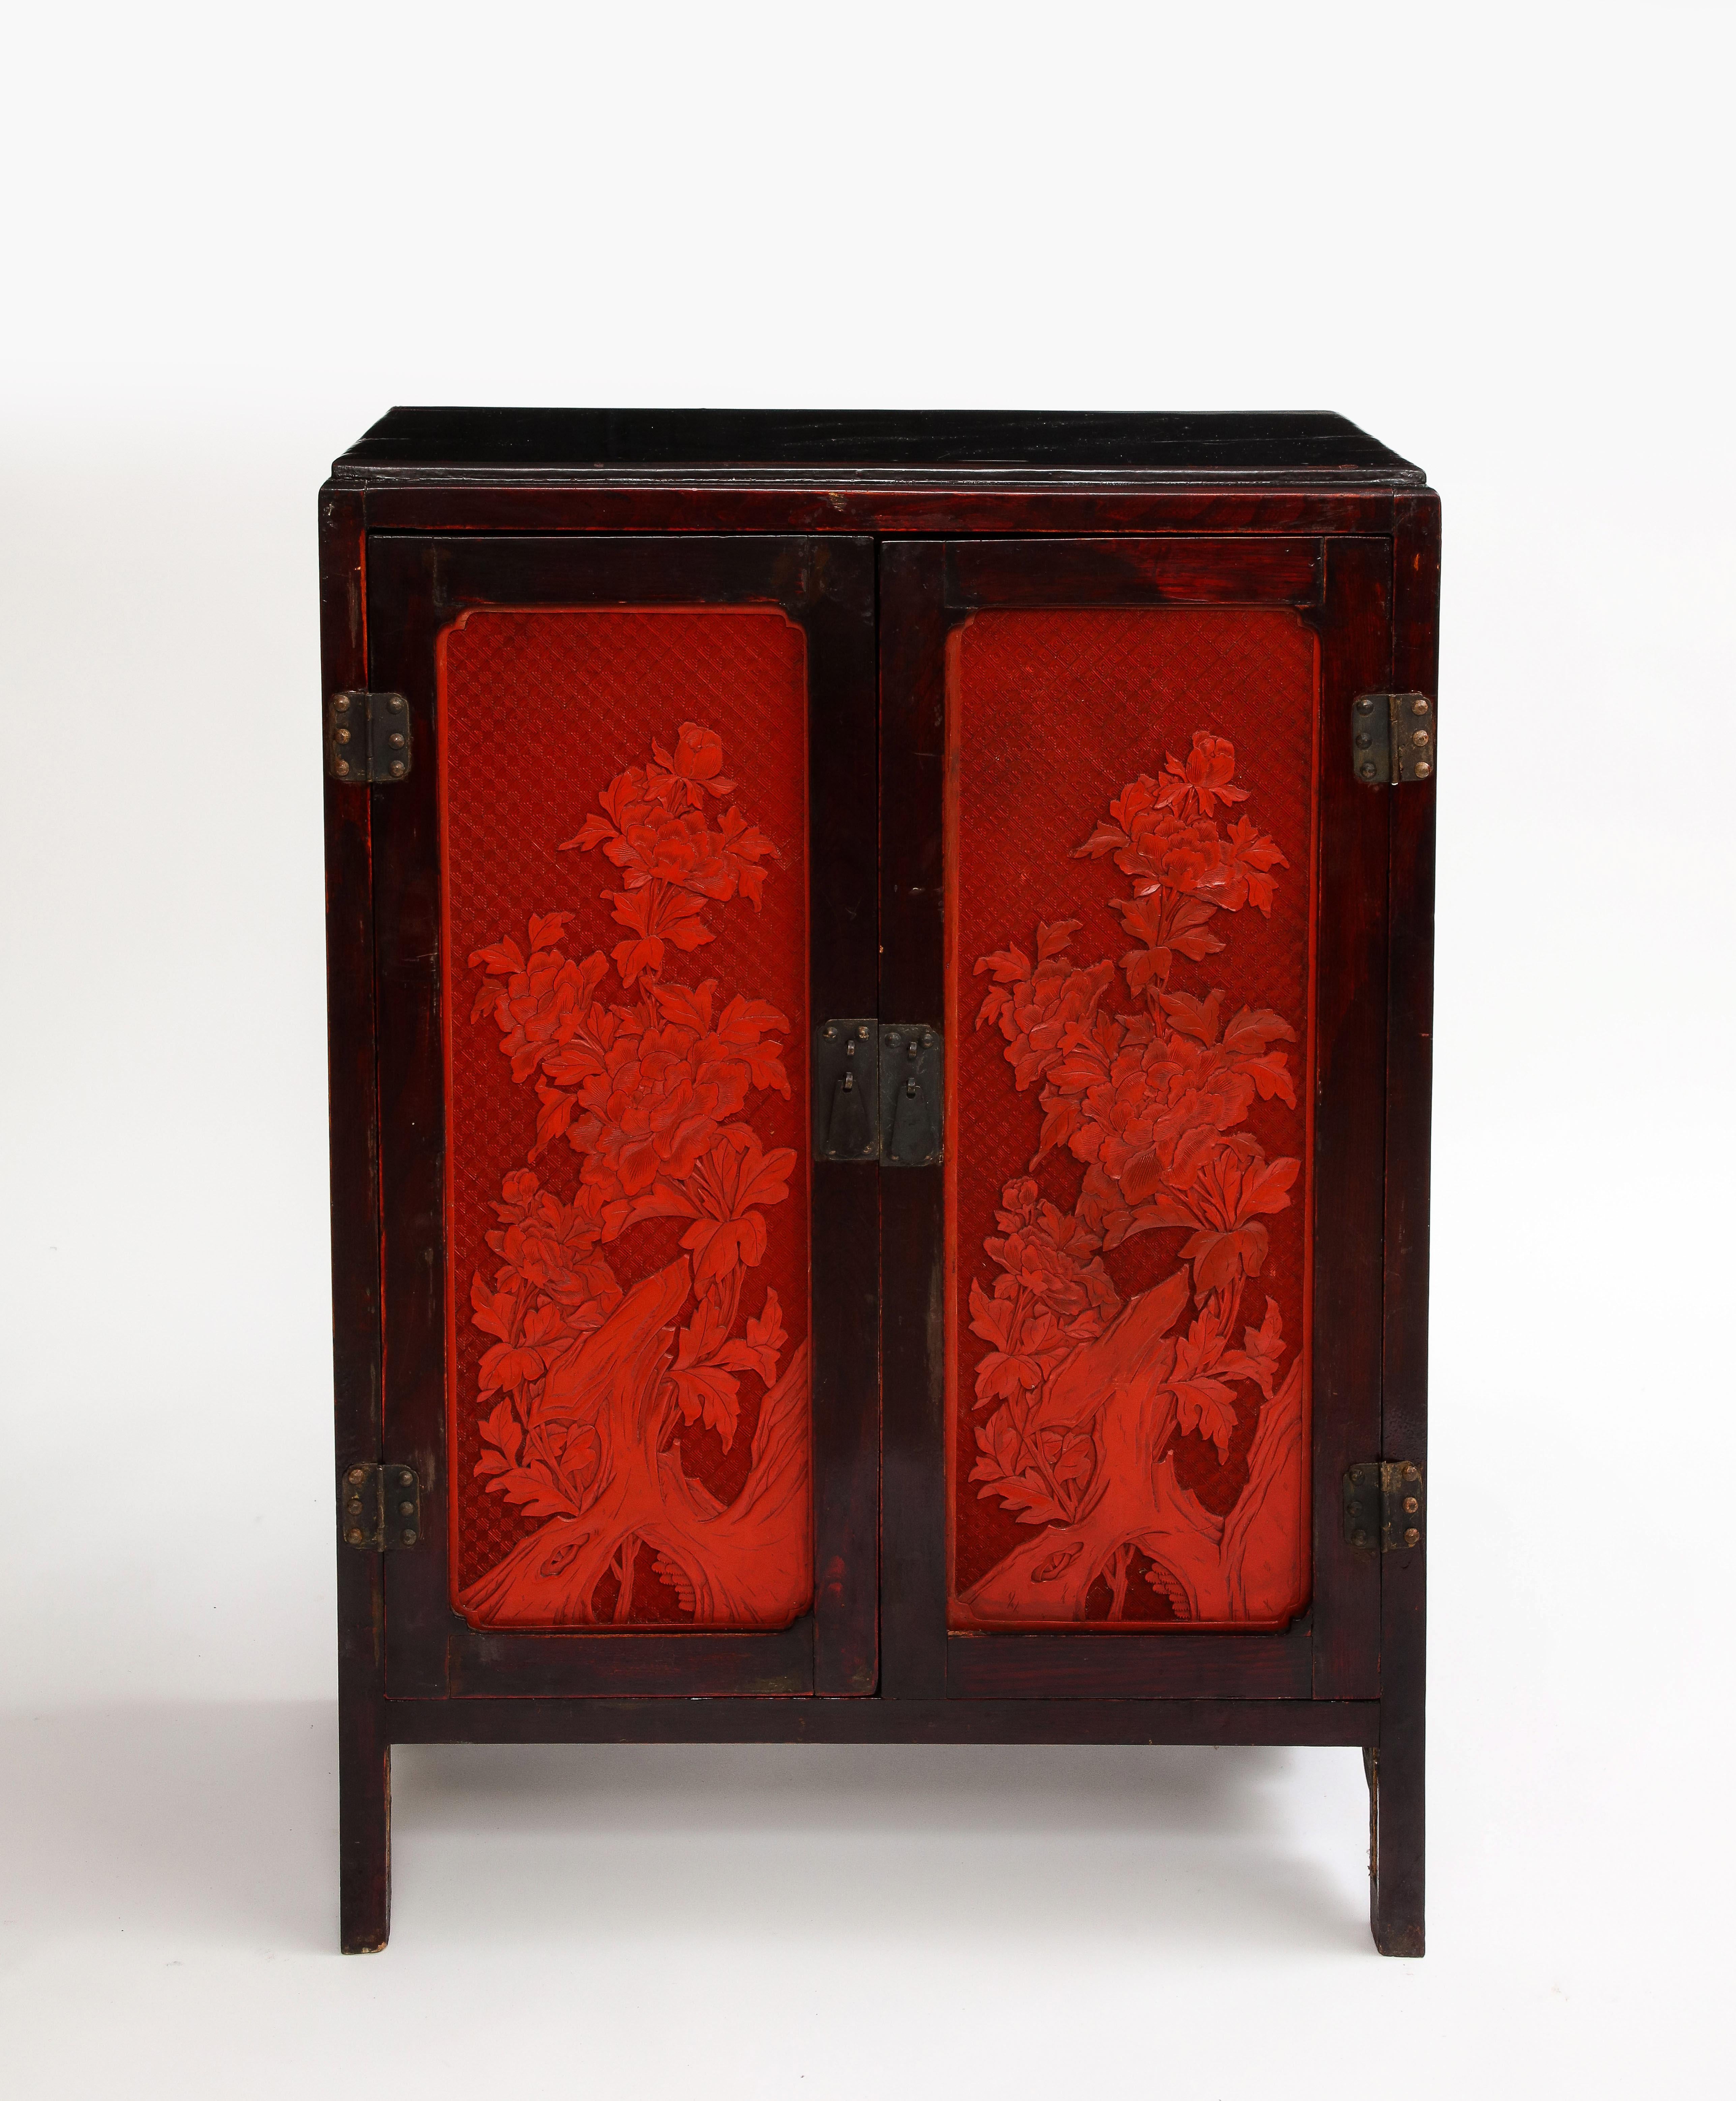 Ein chinesischer Zinnoberschrank mit Intarsien aus Hartholz aus dem 19.  Dieses wunderbare Stück zeigt eine harmonische Verschmelzung von Kunstfertigkeit und Handwerkskunst und strahlt zeitlose Eleganz und Anziehungskraft aus.  Der Schrank wird von